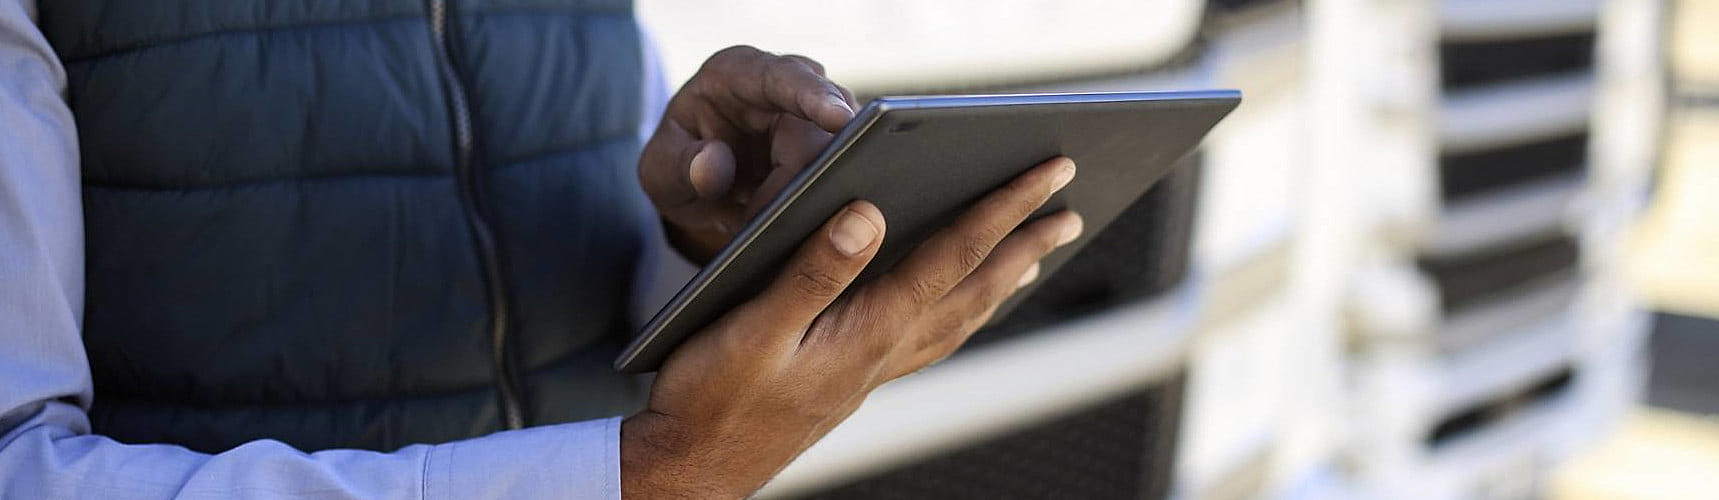 sistemas de gerenciamento de entregas: uma pessoa confere dados em um tablet